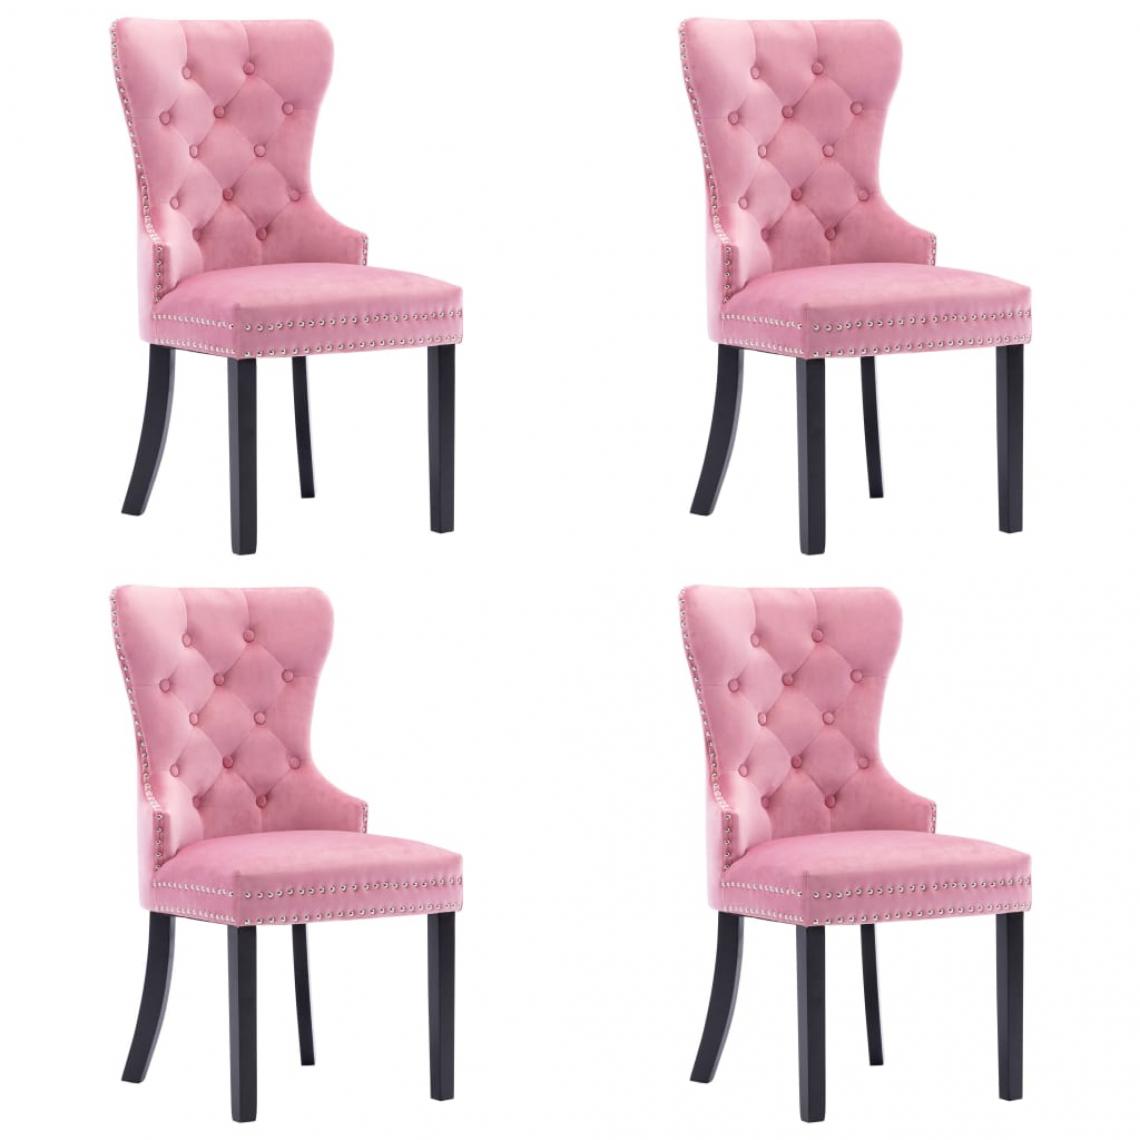 Decoshop26 - Lot de 4 chaises de salle à manger cuisine design classique velours rose CDS021921 - Chaises